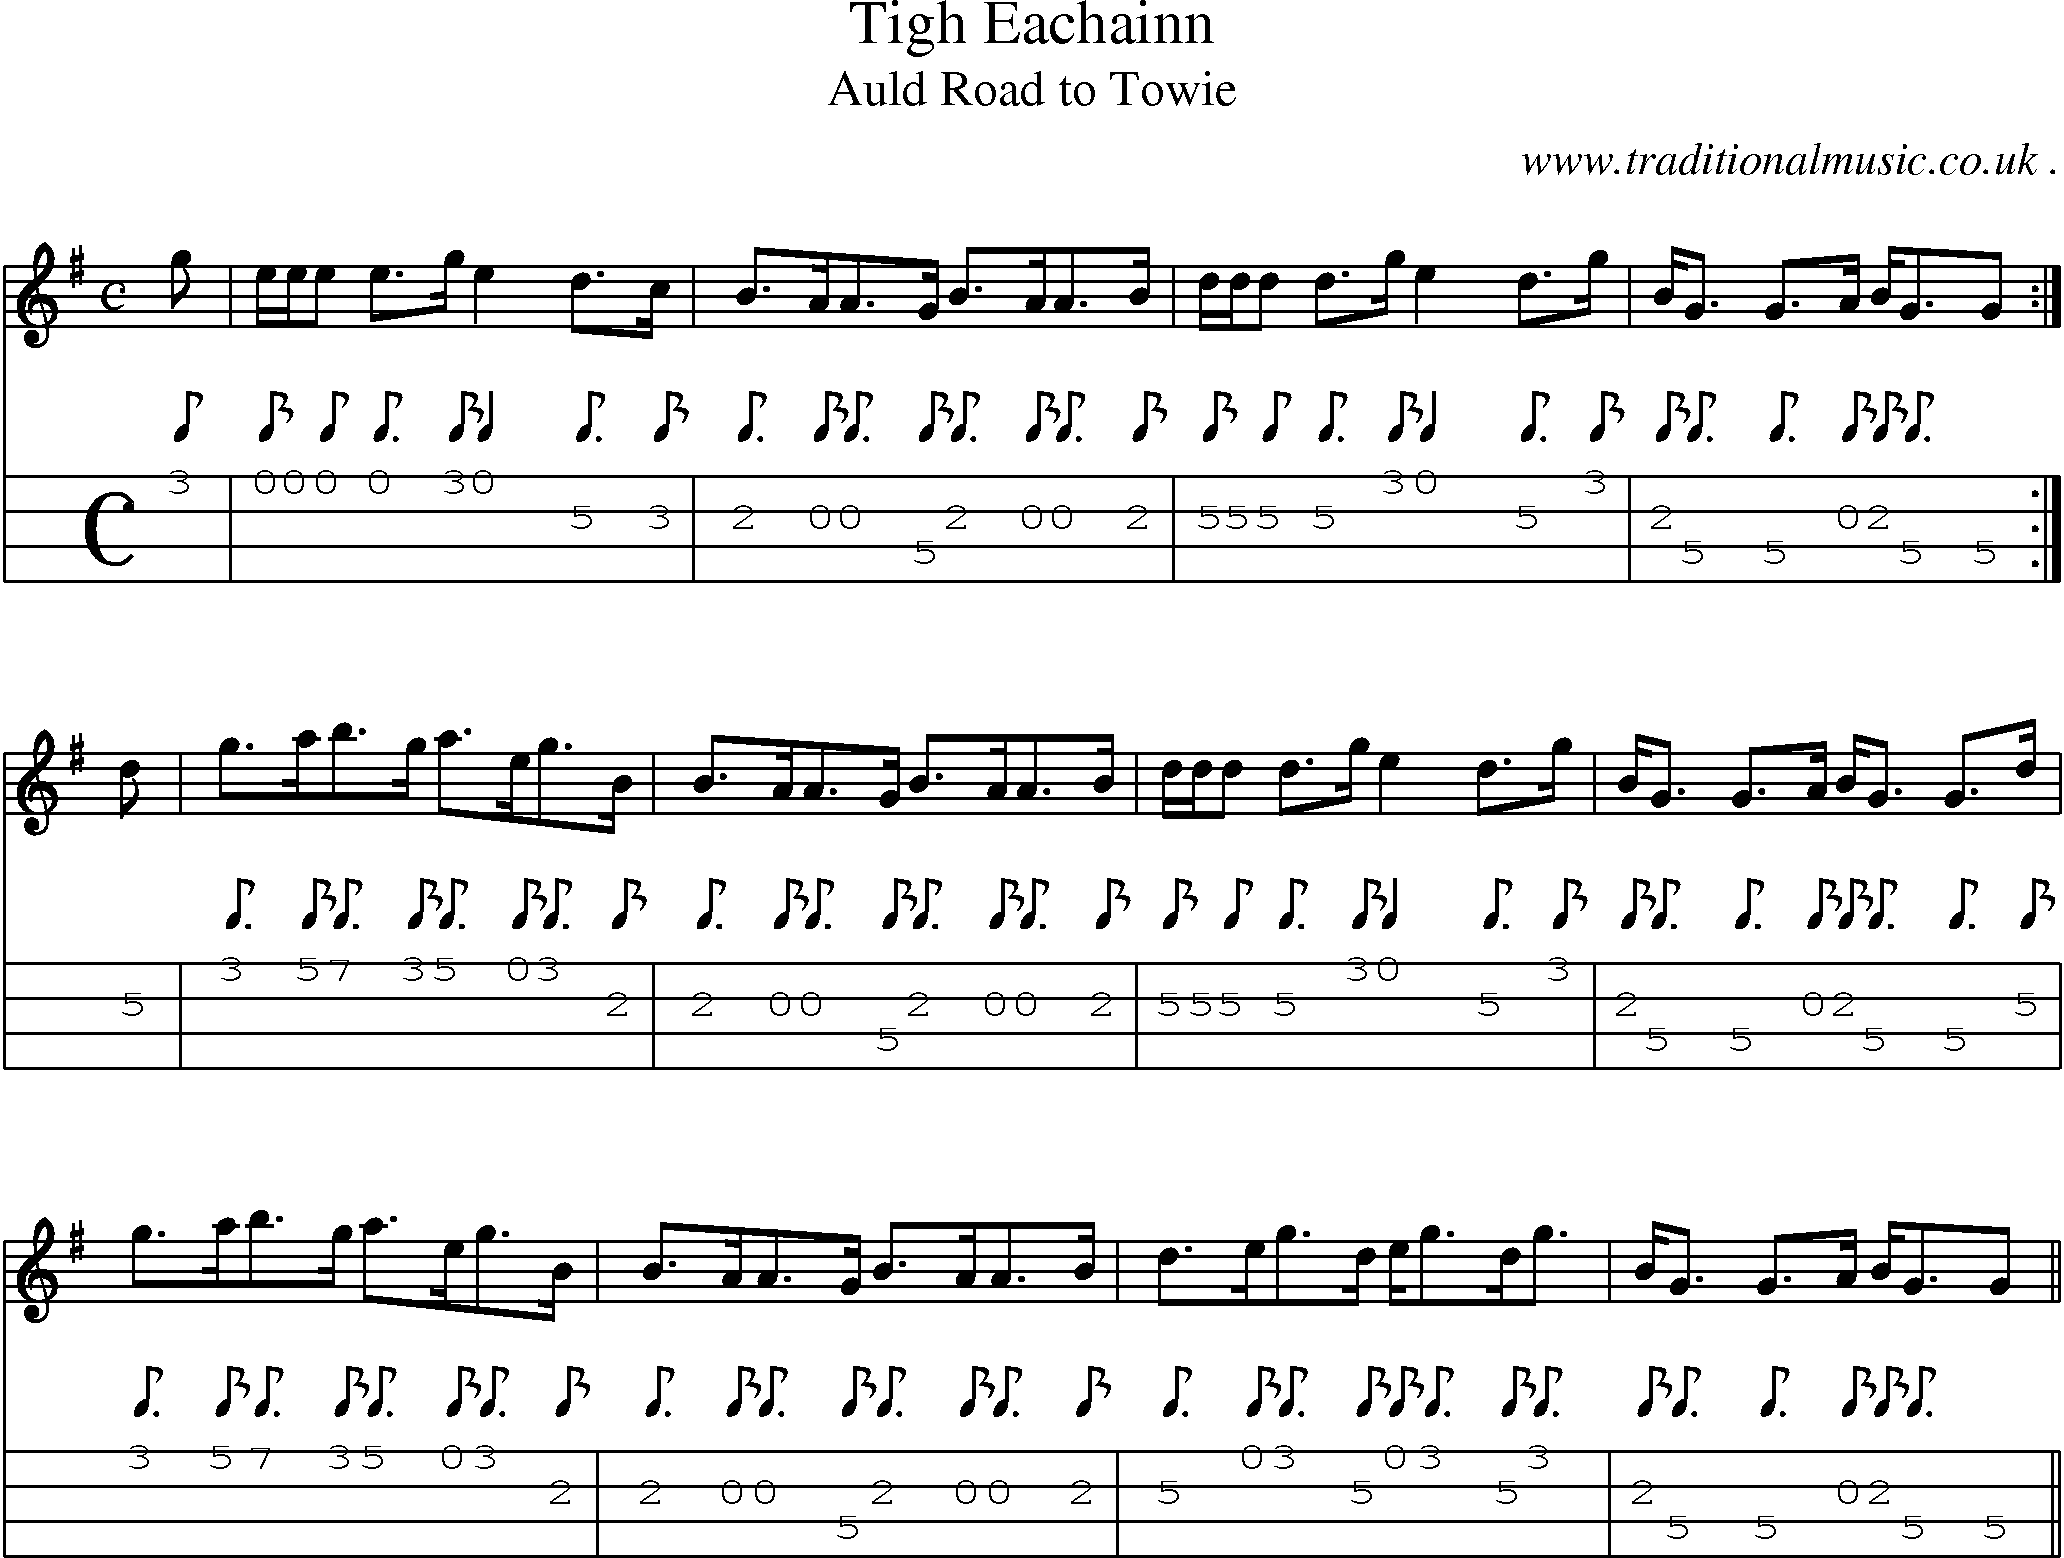 Sheet-music  score, Chords and Mandolin Tabs for Tigh Eachainn